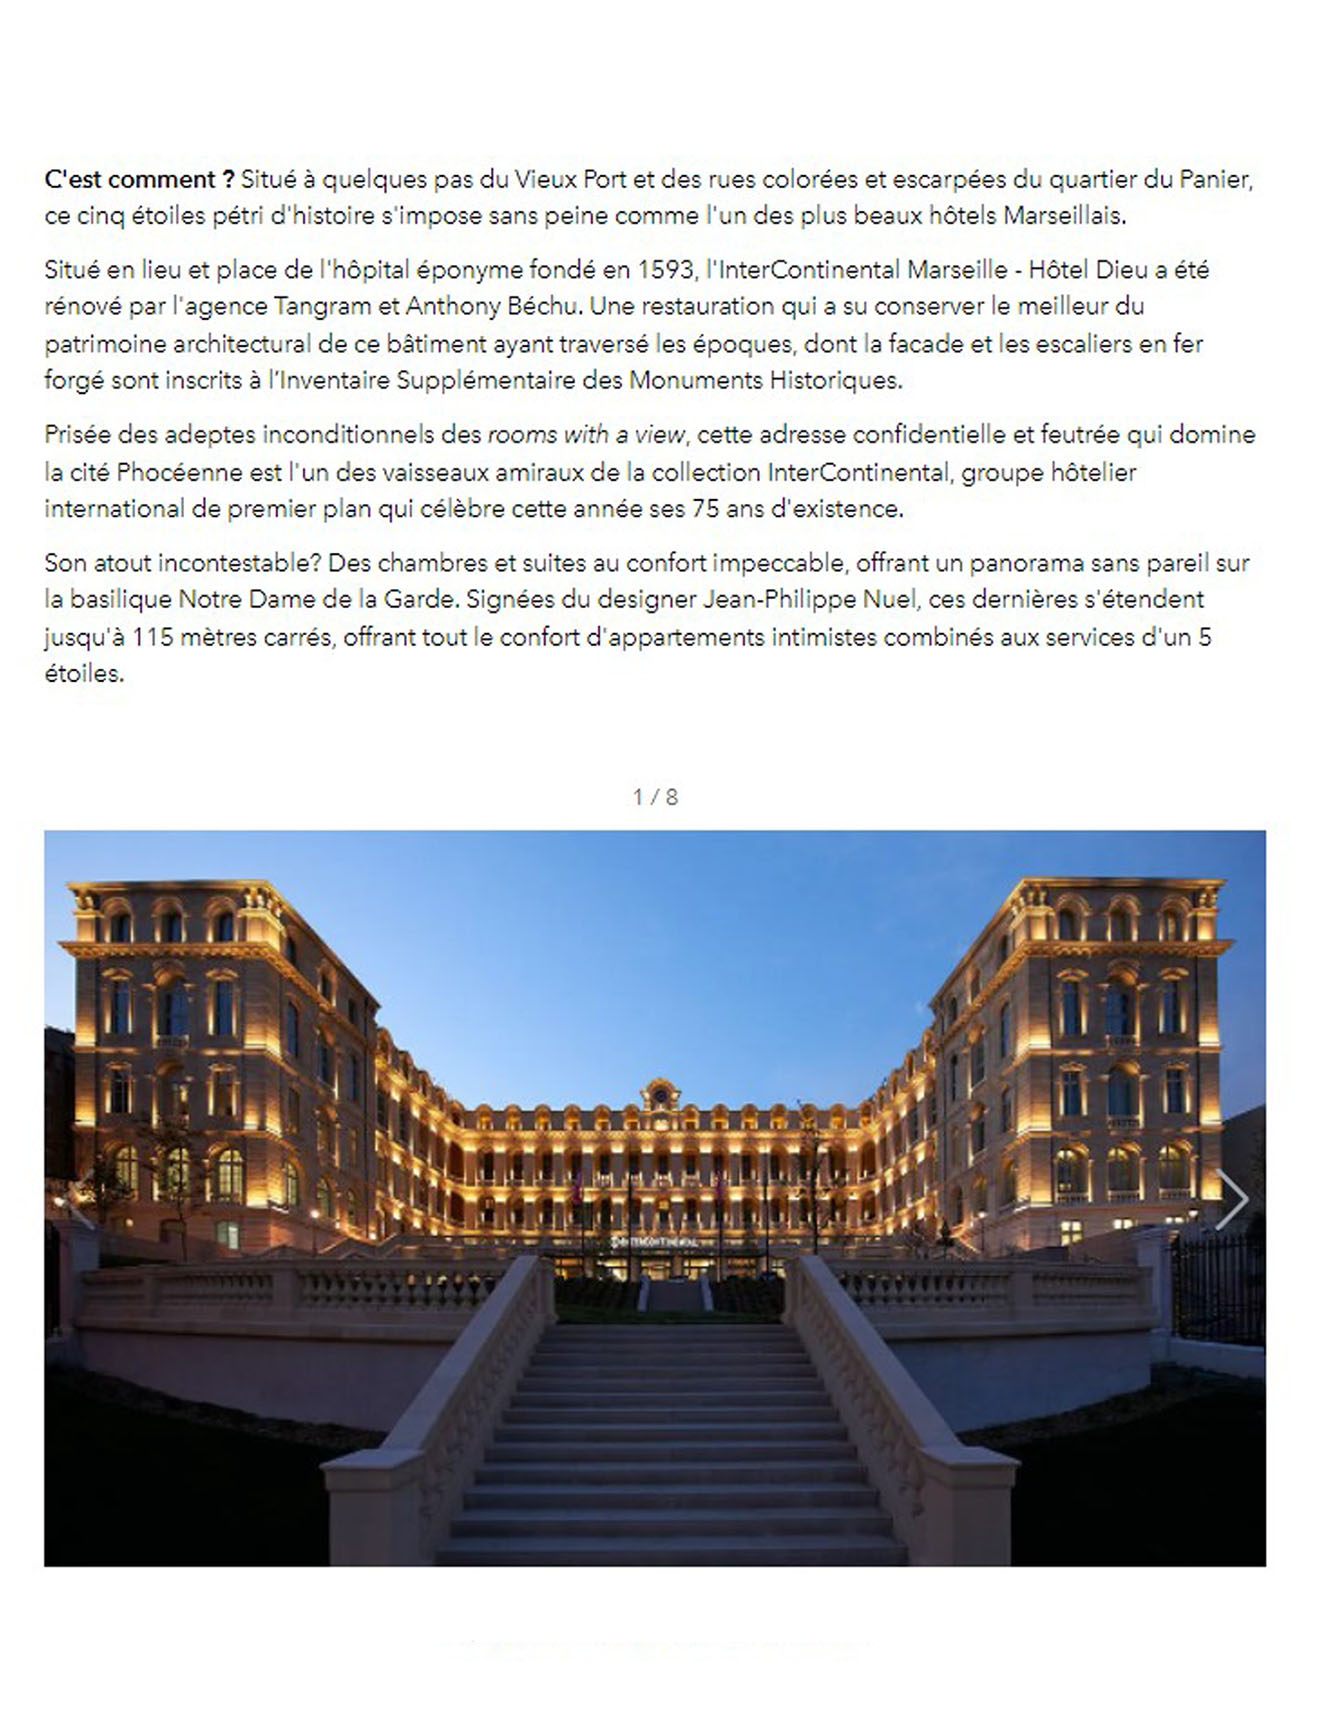 Article de L'officiel sur L'InterContinental Marseille Hôtel Dieu, un ancien hôpital transformé en hôtel 5 étoiles situé près du vieux port de la ville, design signé jean-philippe nuel